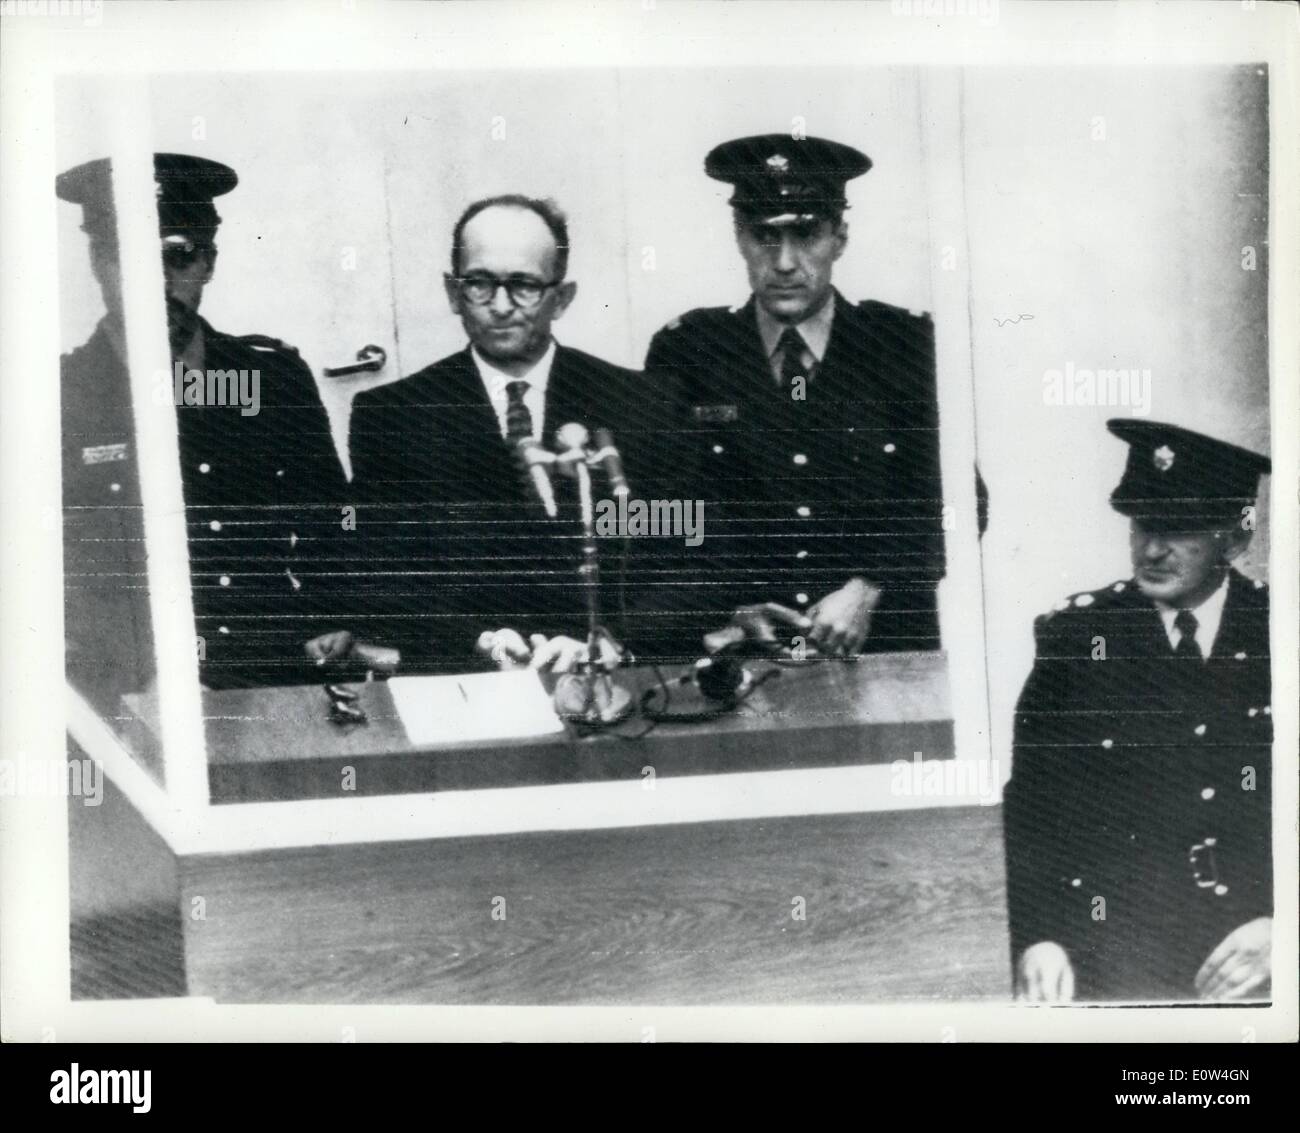 Apr. 04, 1961 - Apertura di Adolf Eichmann trail - a Gerusalemme. opportunità con omicidi di massa degli ebrei. La versione di prova ha aperto la mattina a Gerusalemme di Adolf elchmanh- ex Nazi s.s.il colonnello - su oneri di Mann uccisione di milioni di ebrei in concentrazione campe durante la guerra. foto mostra ben custodito con un poliziotto su entrambi i lati della casa - Adolf Eichmann visto nel suo speciale a prova di proiettile dook - in apertura della sua prova di Gerusalemme questa mattina. Foto Stock